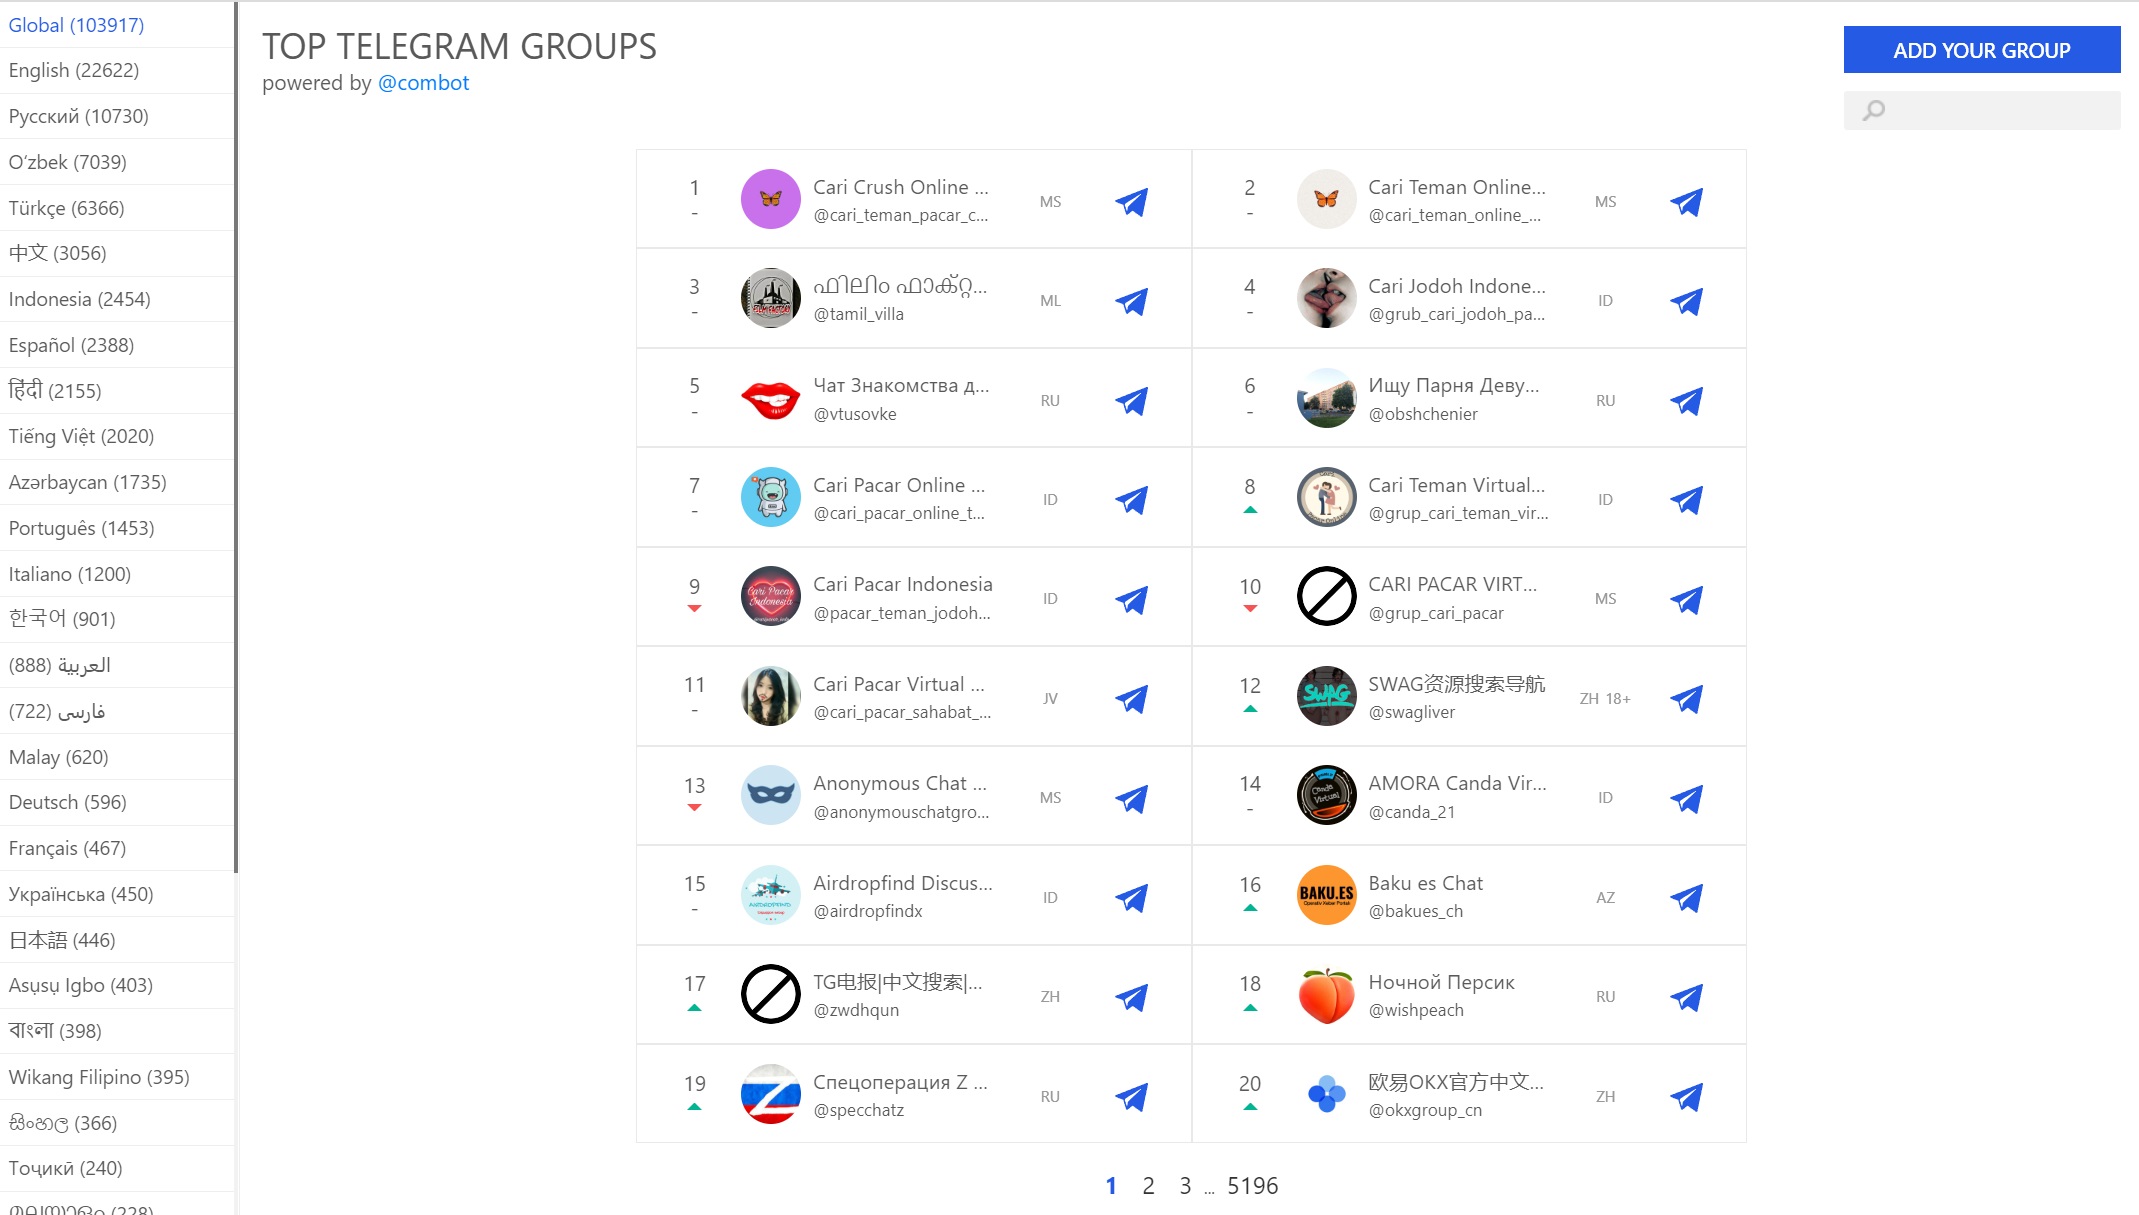 Top telegram groups